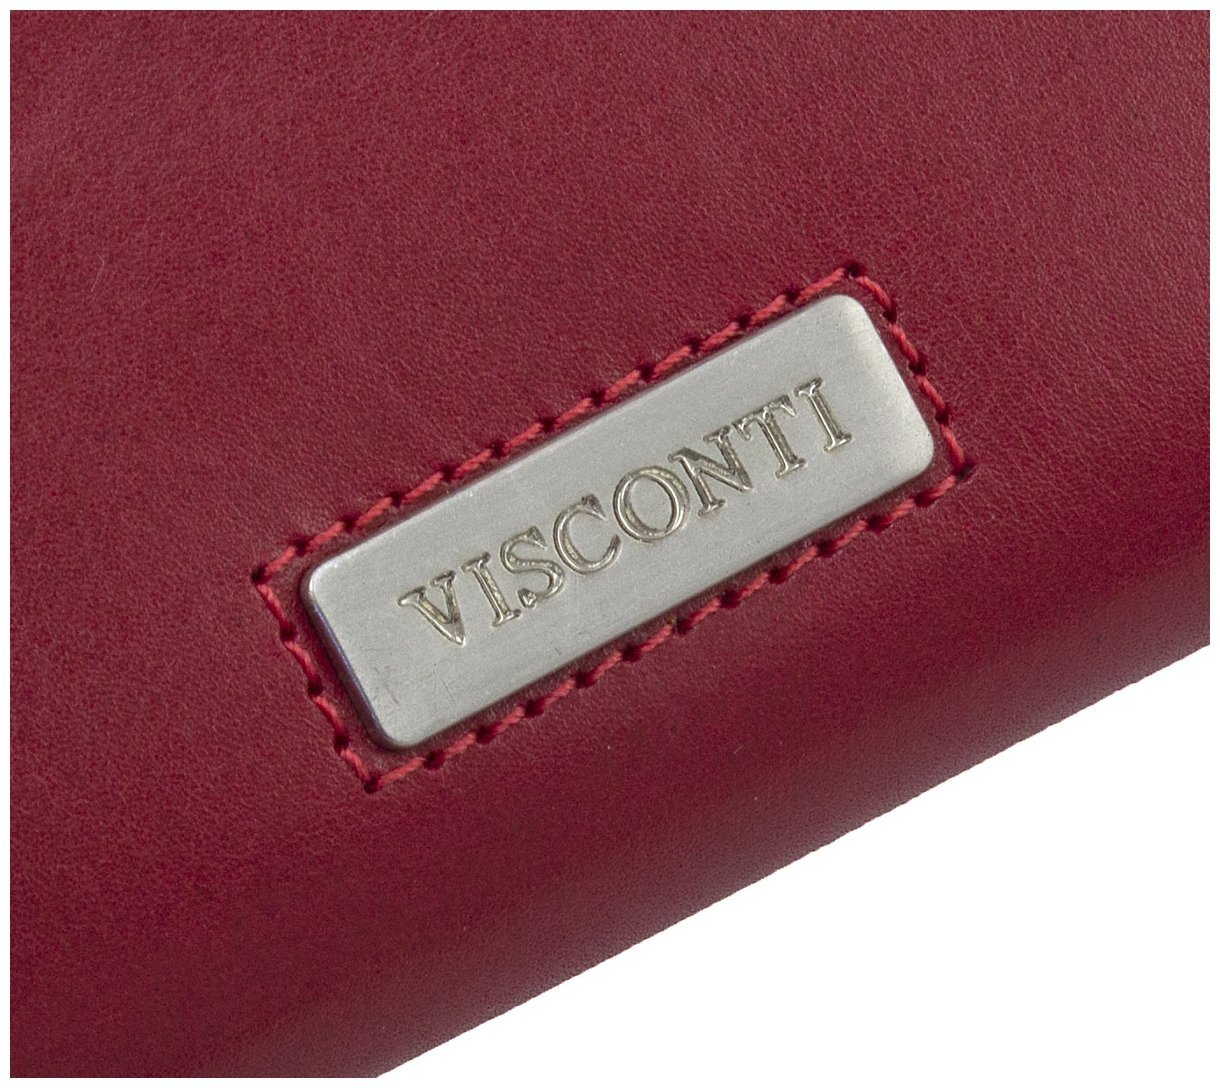 Крупный женский кошелек из гладкой кожи красного цвета с RFID - Visconti 68886